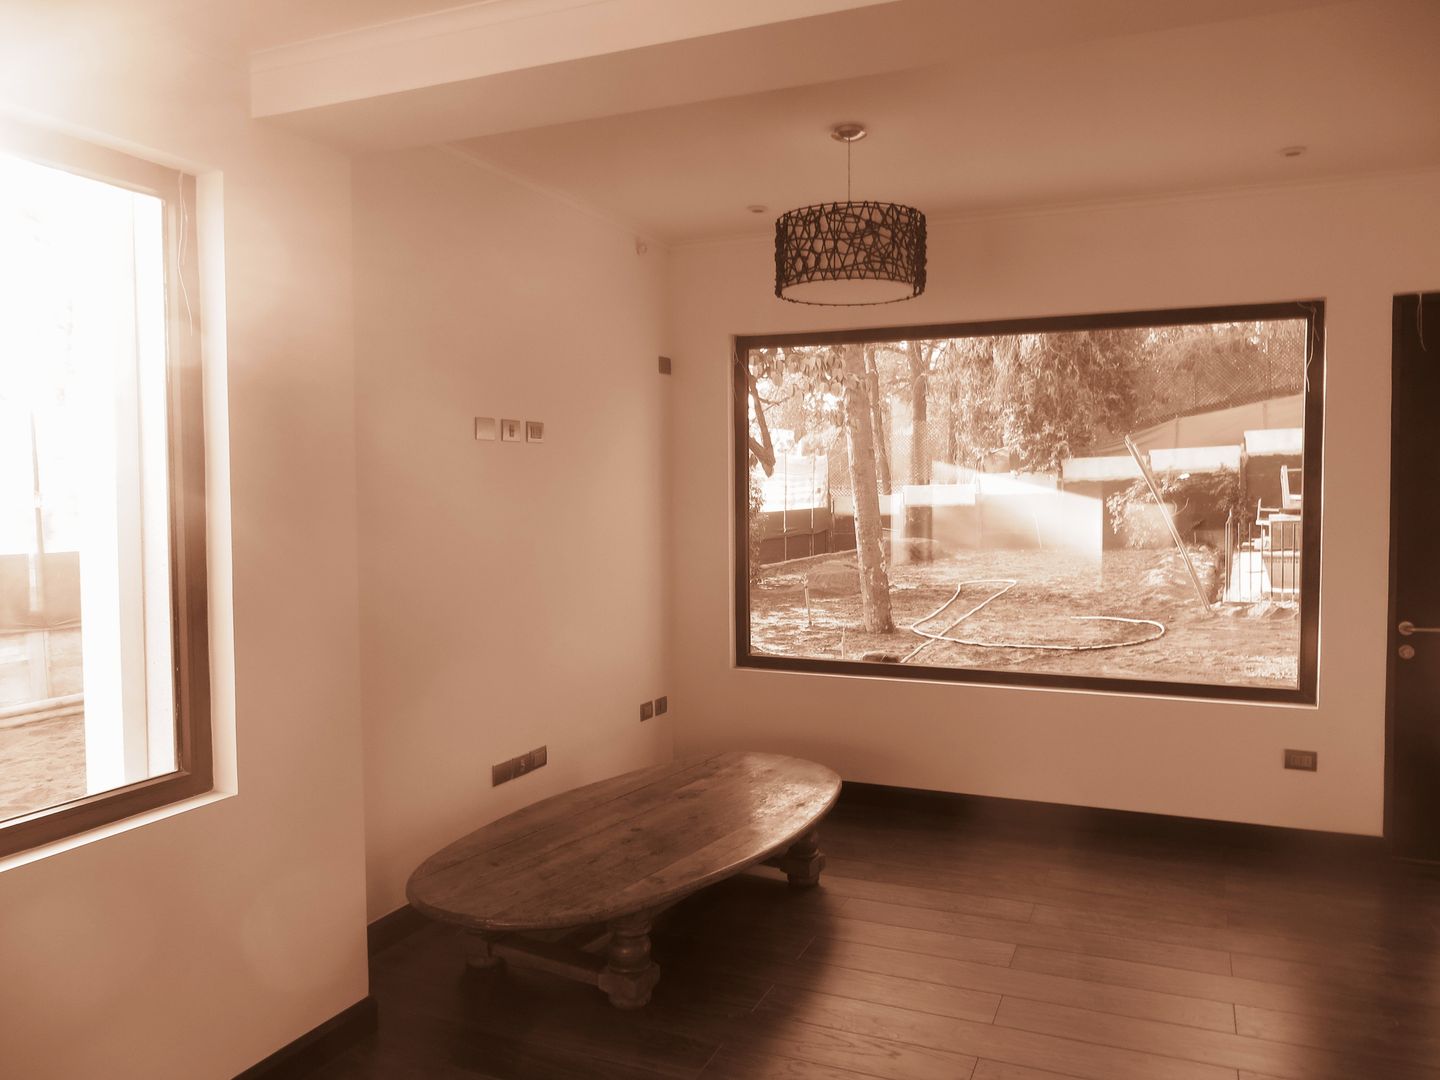 Sala de Estar, Living Room RCR Arquitectos Estudios y despachos de estilo moderno Madera Acabado en madera